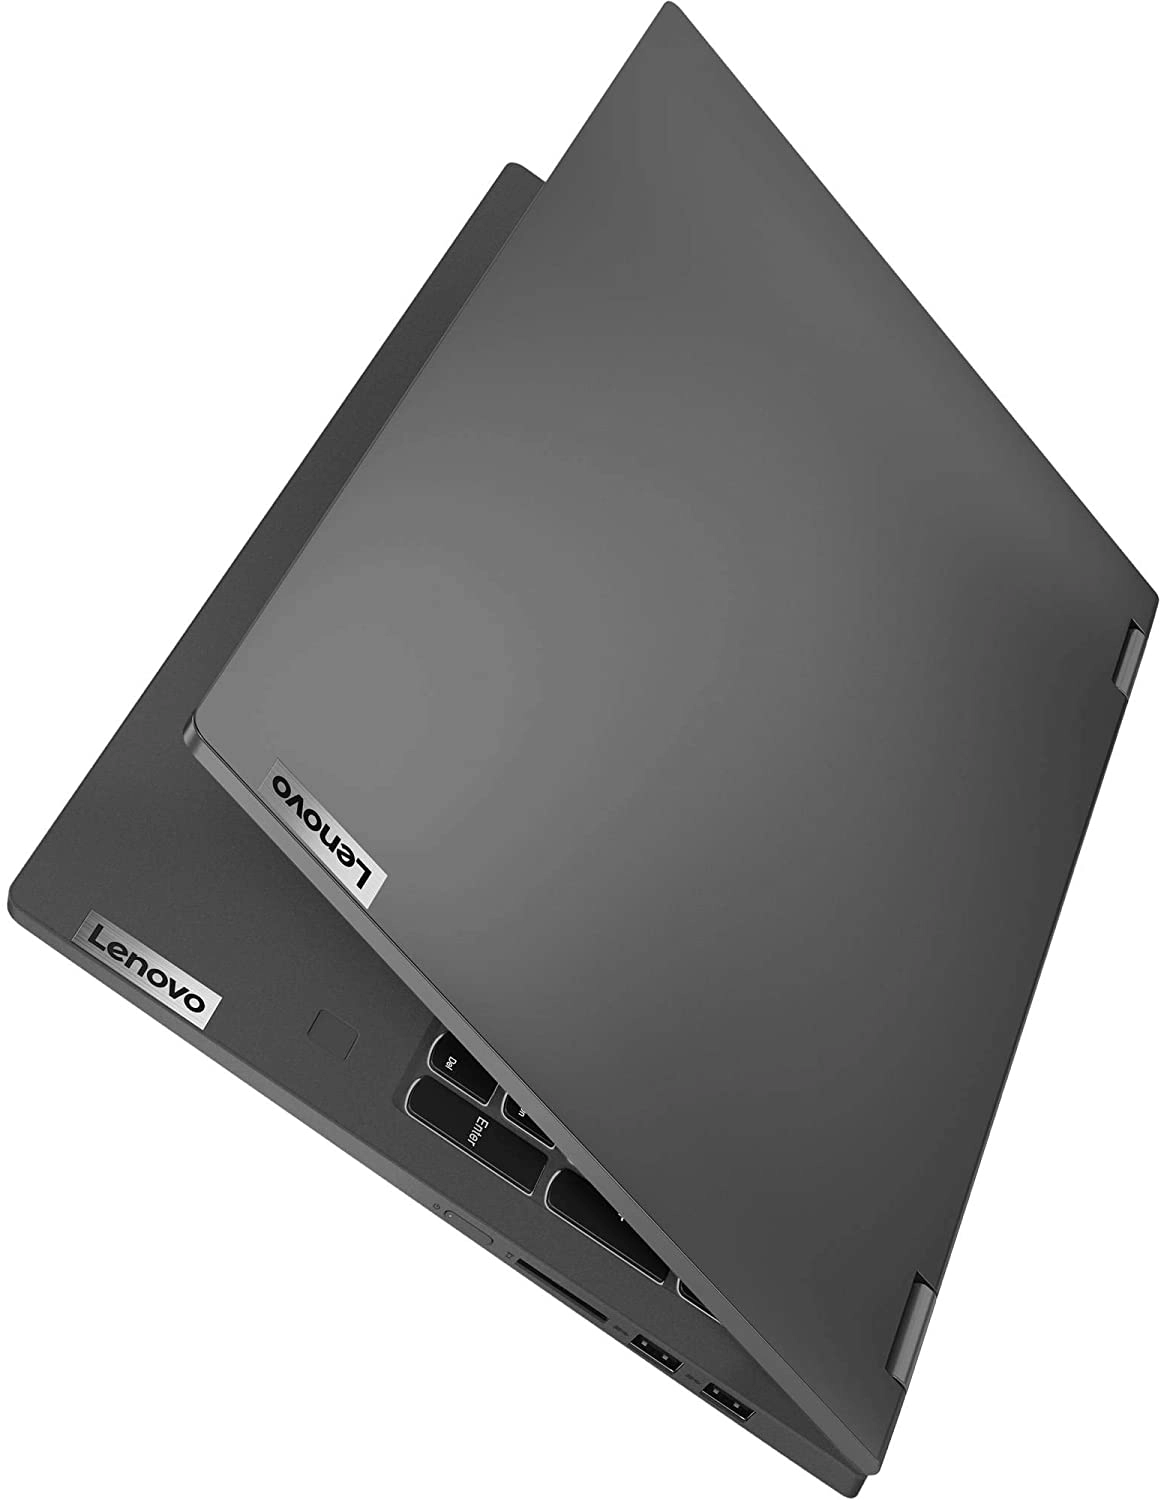 Lenovo IdeaPad Flex 5 15IIL05 81X3000VUS laptop image